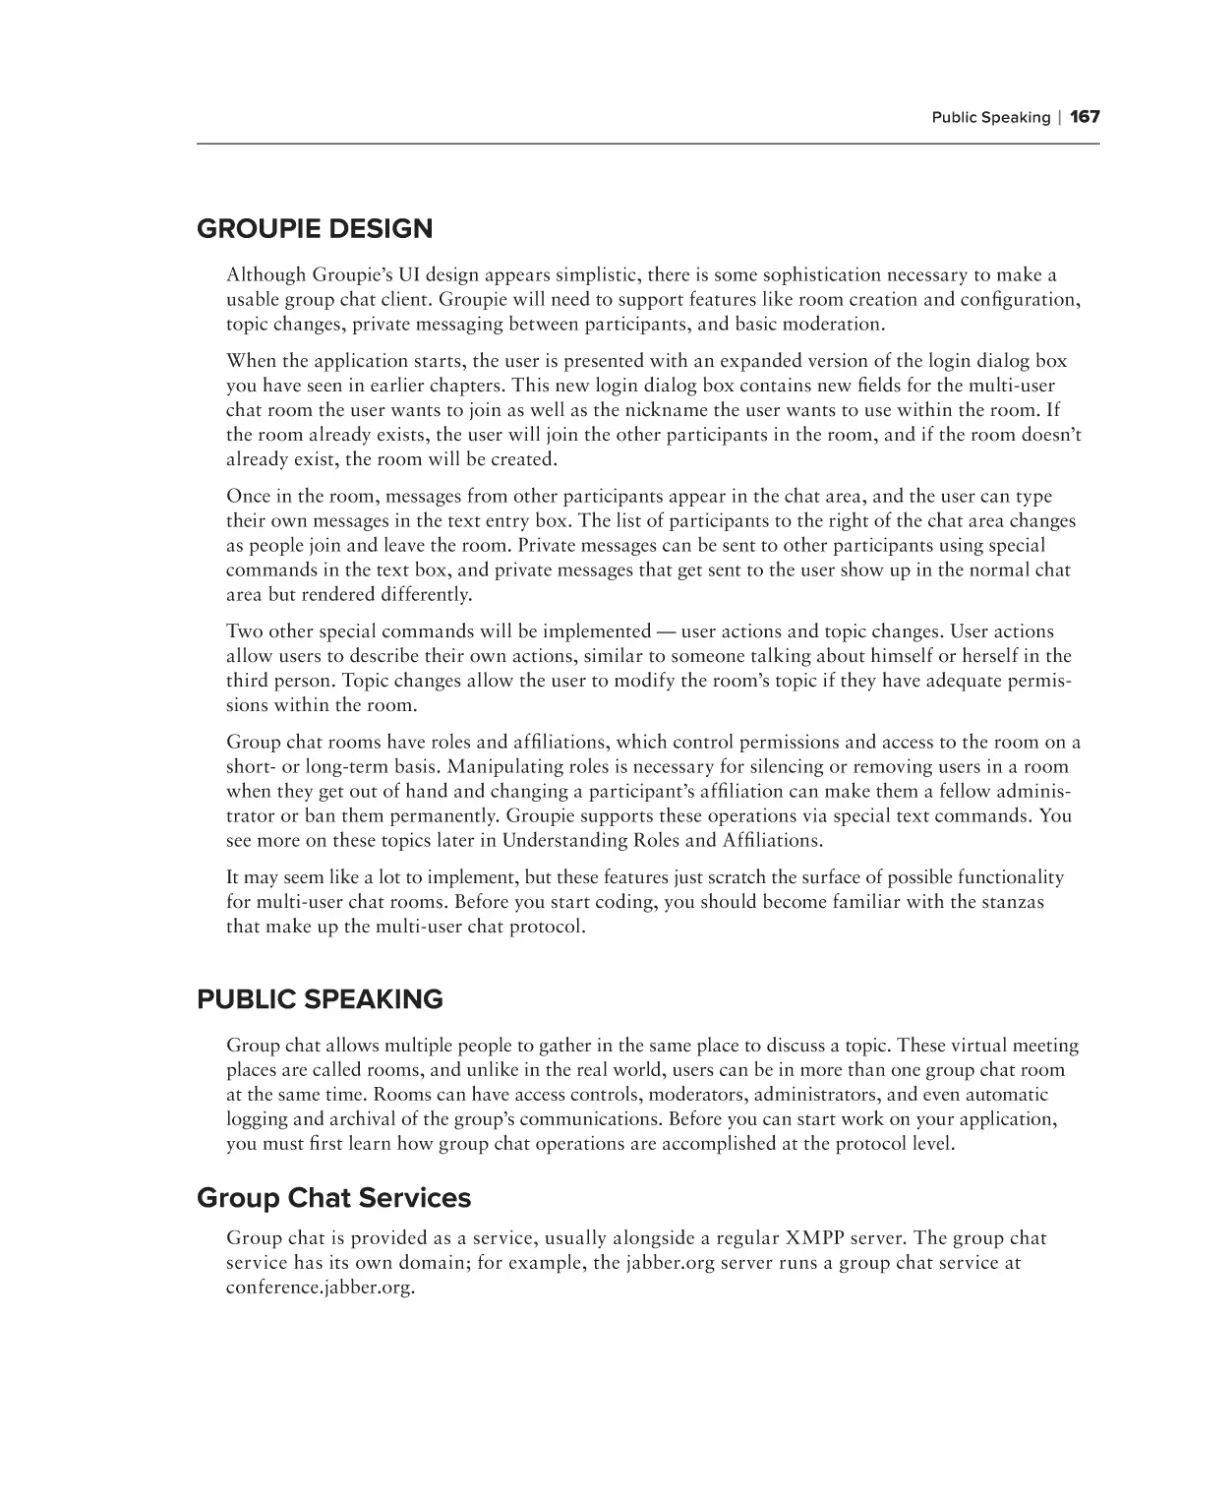 Groupie Design
Public Speaking